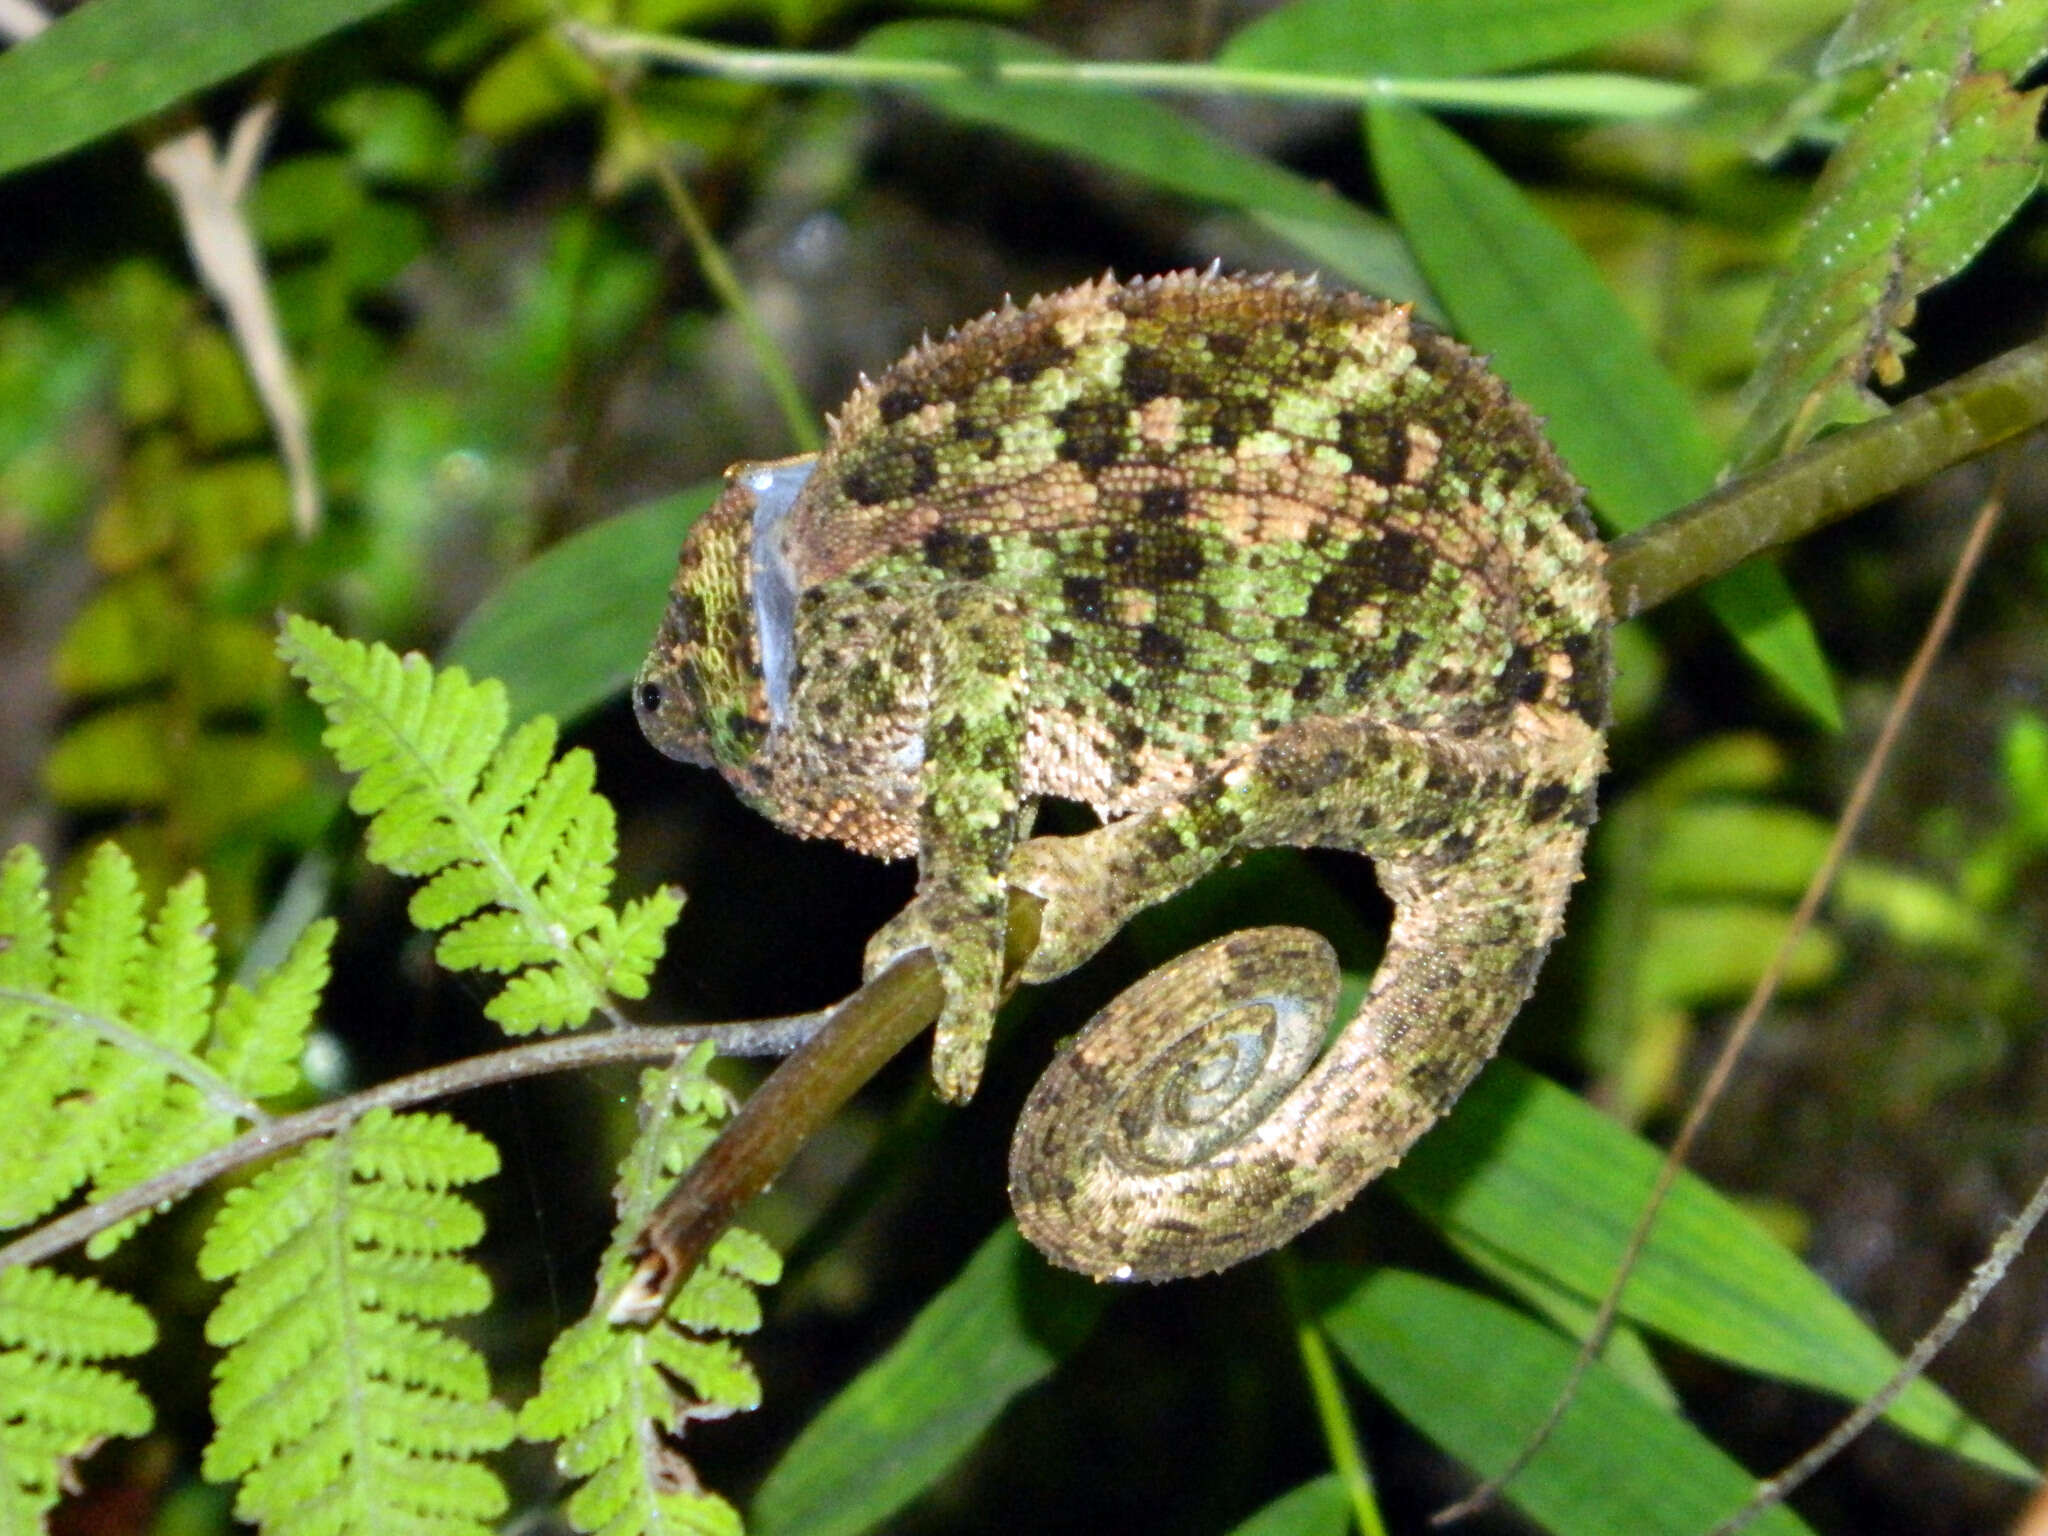 Image of Blue-legged chameleon